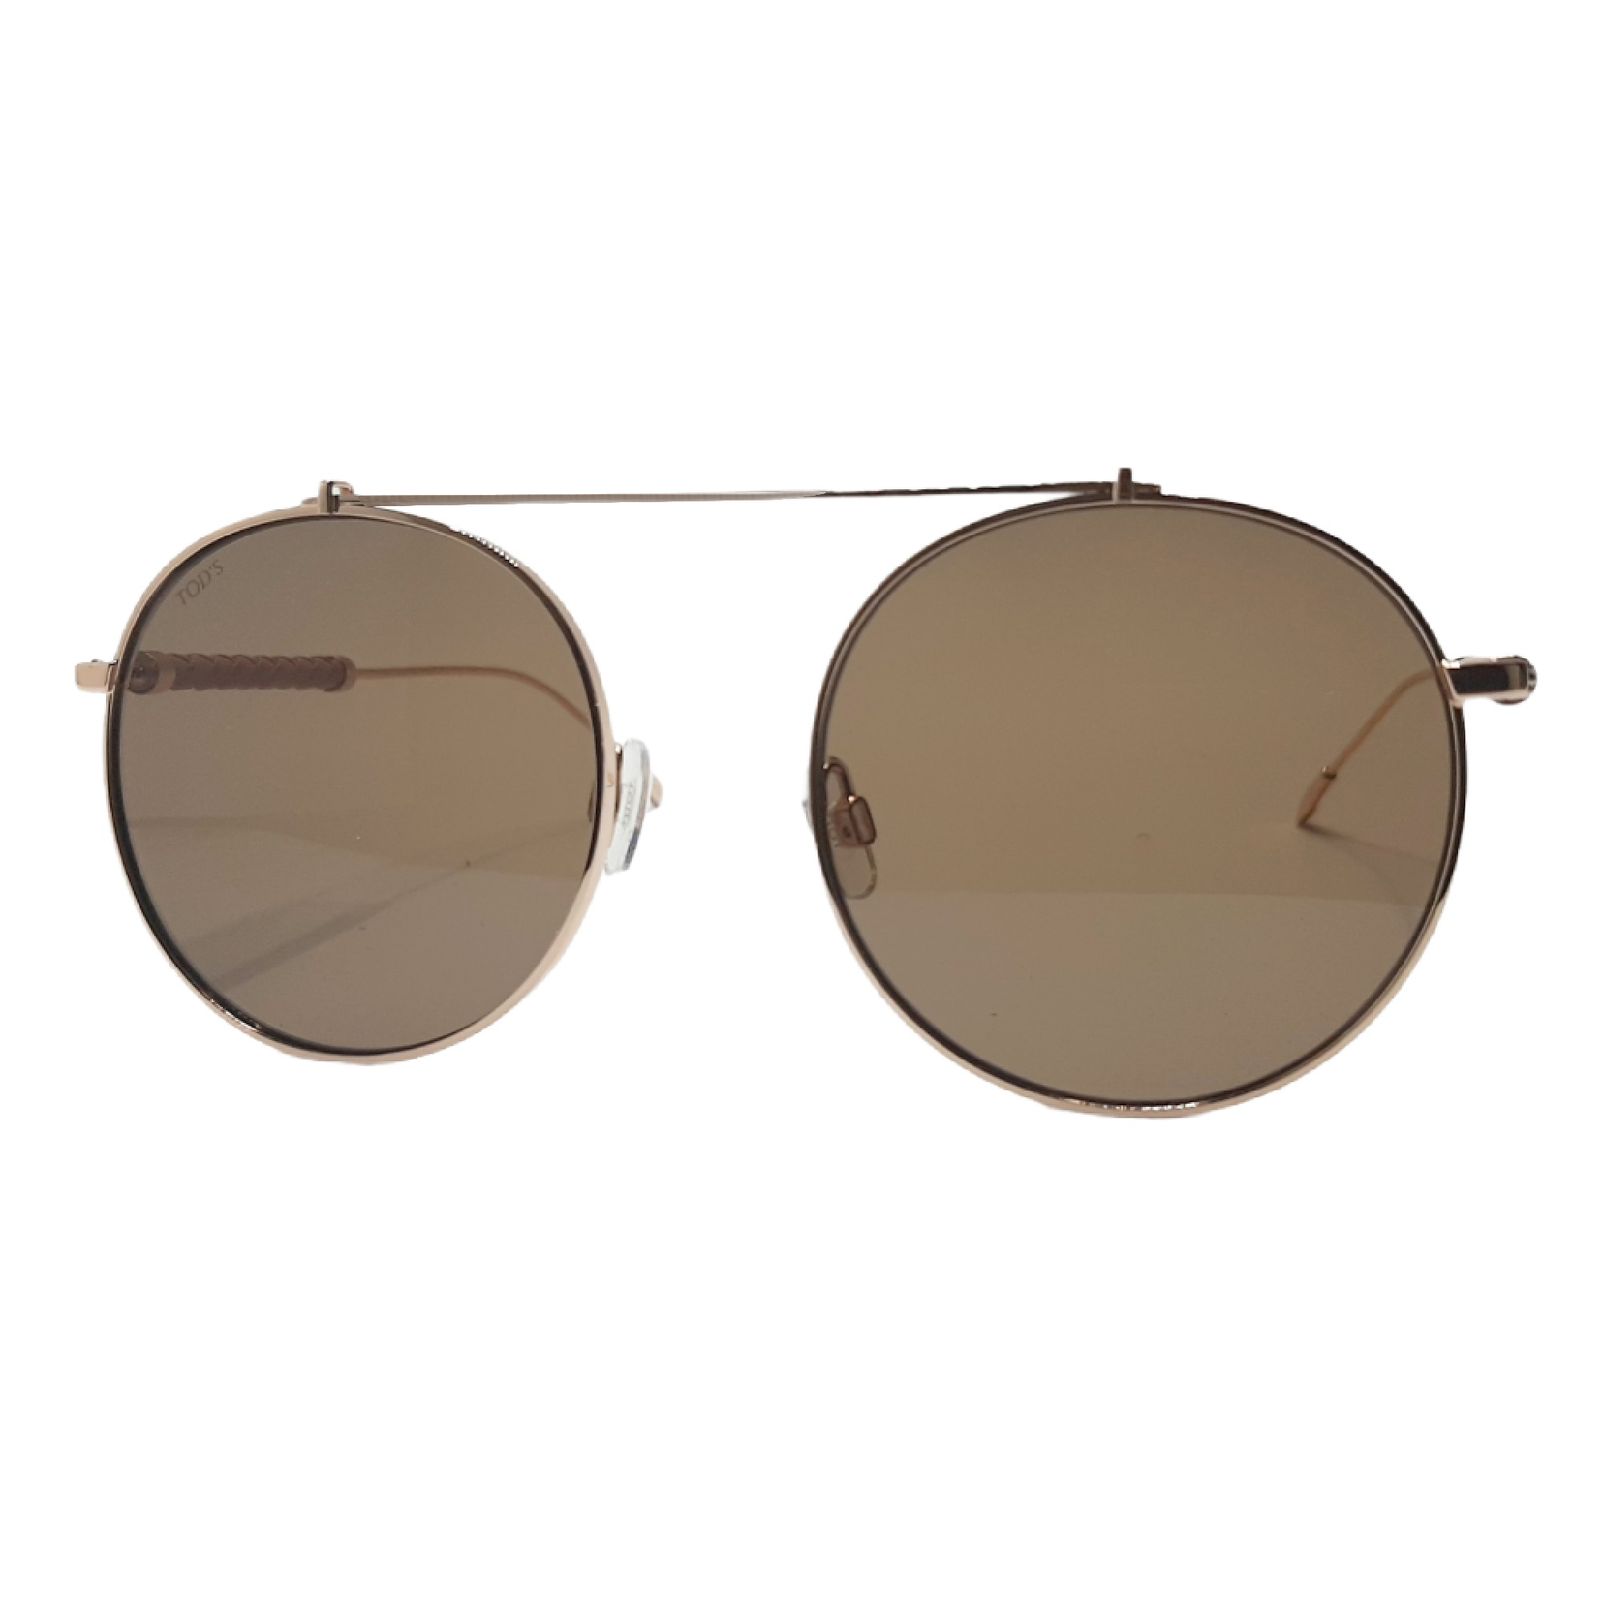 عینک آفتابی تادس مدل TO198c2 -  - 1